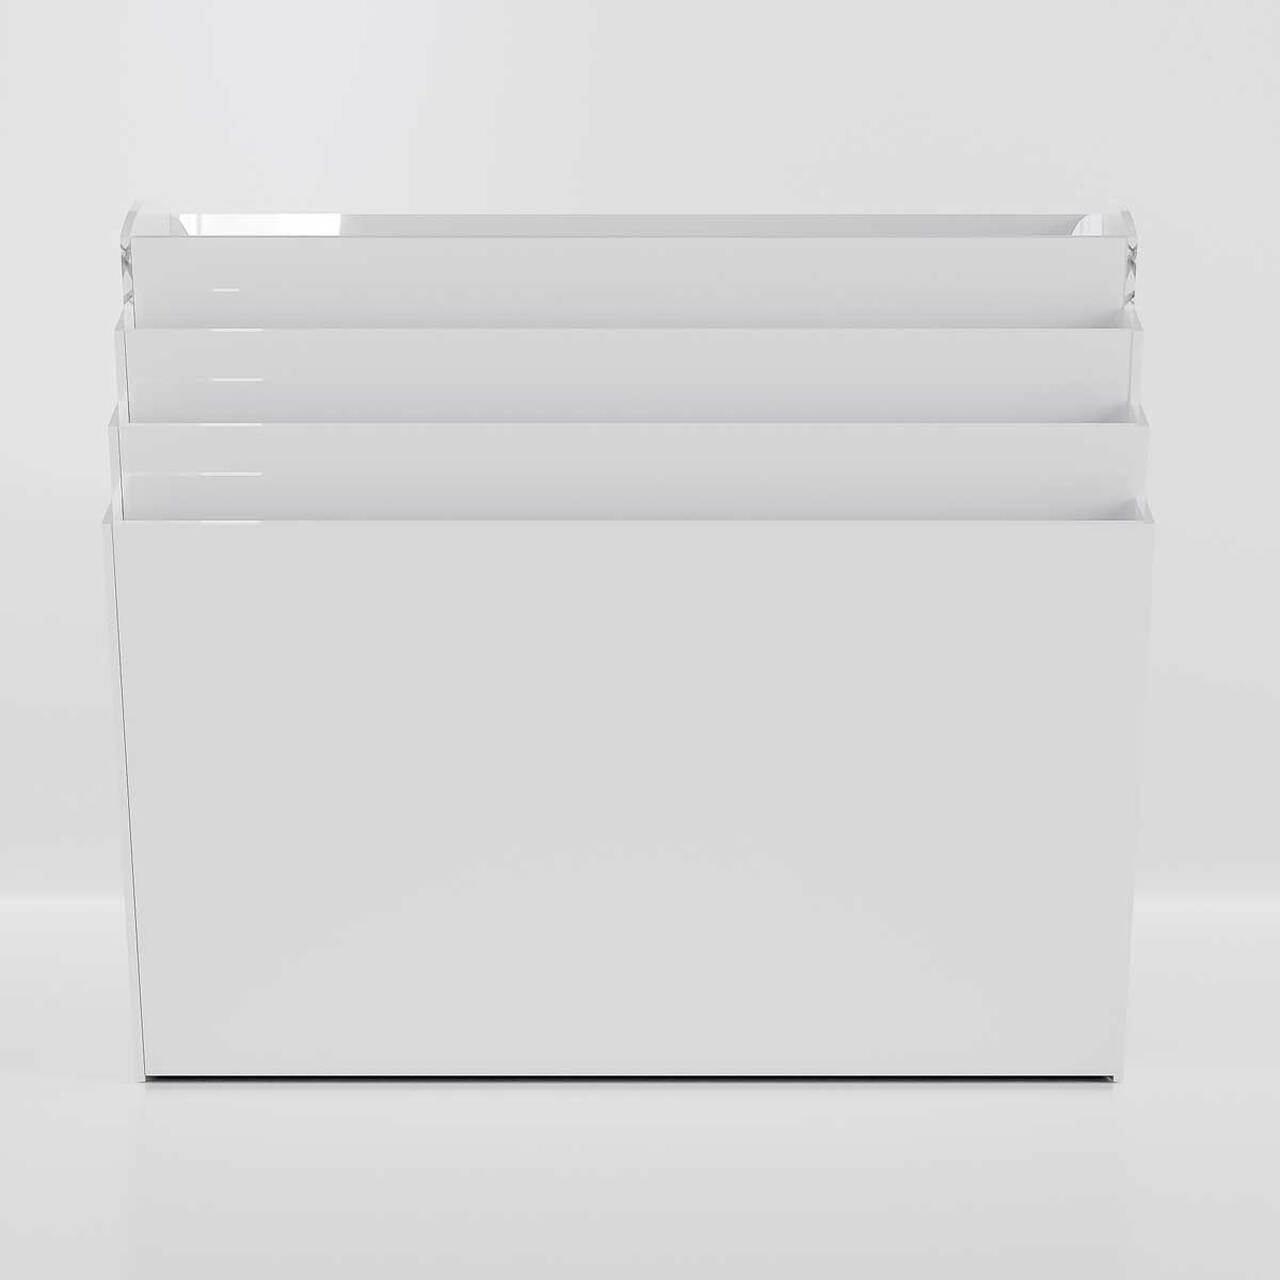 Suport de perete pentru broșuri, alb, cu 4 buzunare format A4( 210x297mm), landscape.